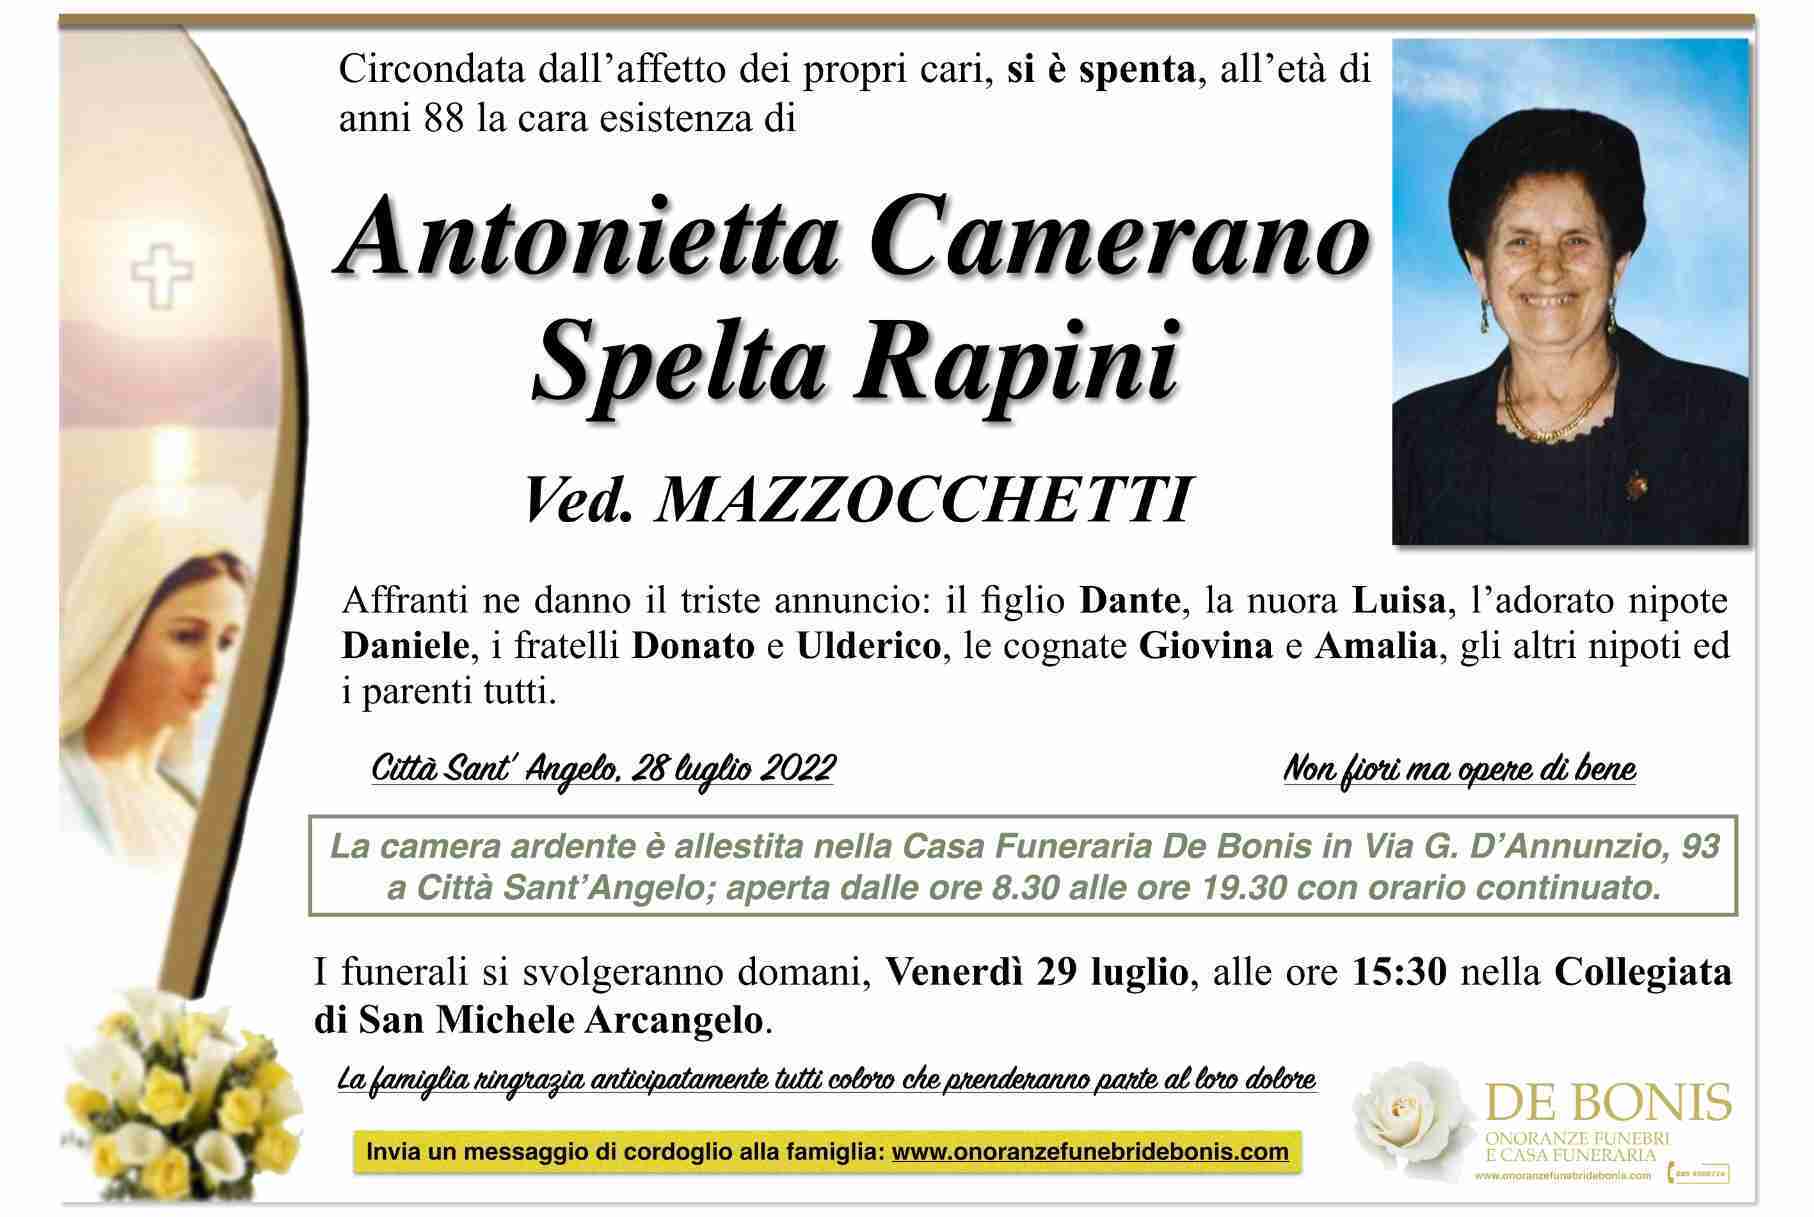 Antonietta Camerano Spelta Rapini